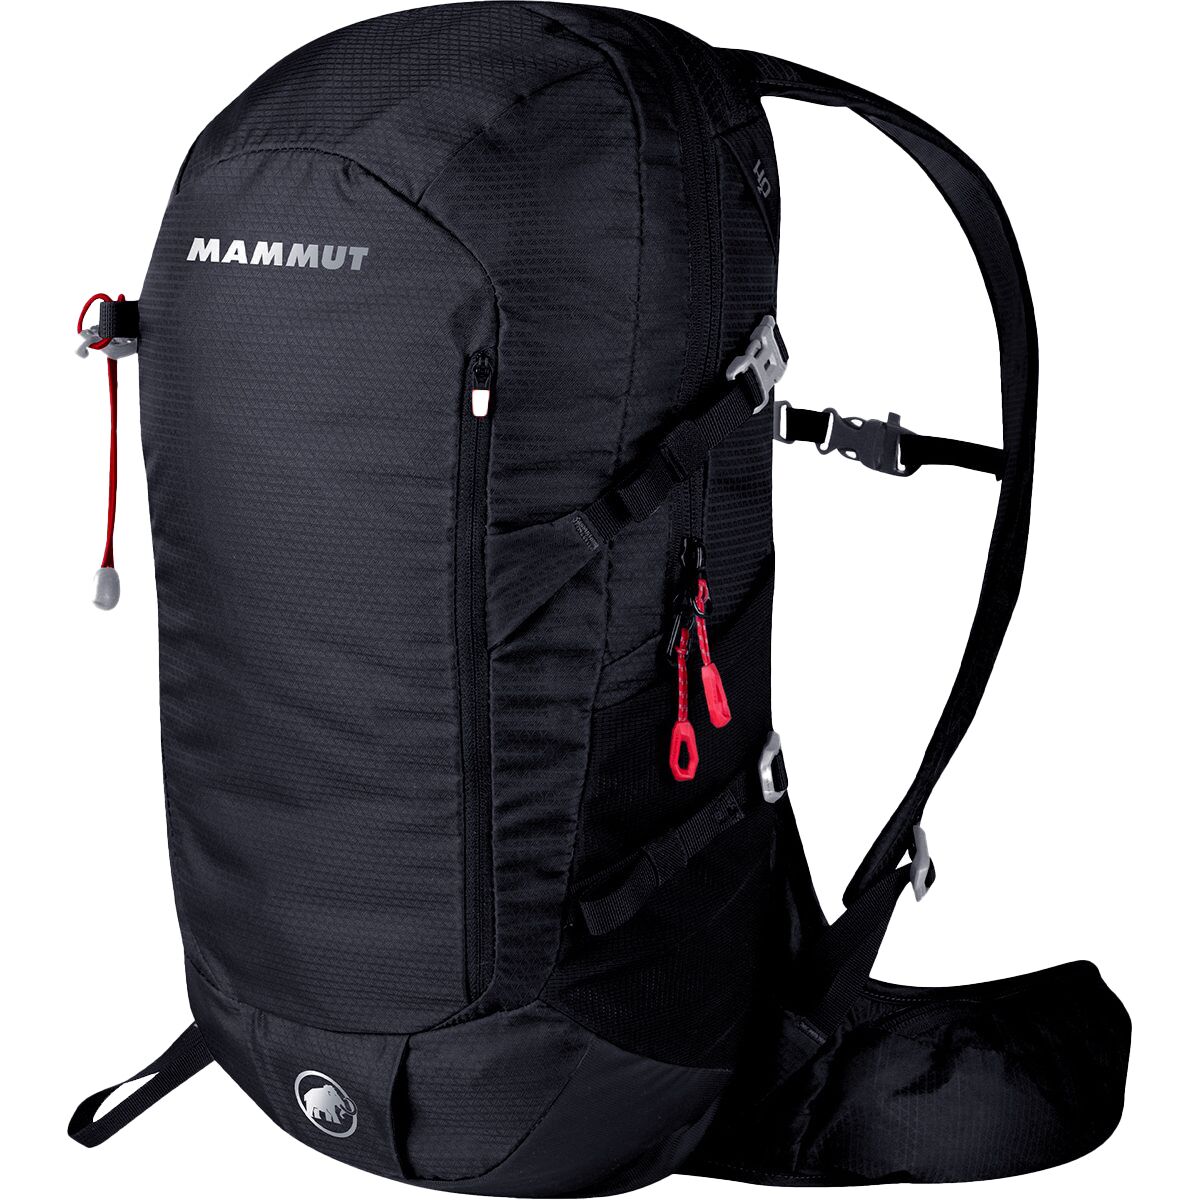 Ik wil niet Bedelen Assert Mammut Lithium Speed 20L Backpack - Hike & Camp